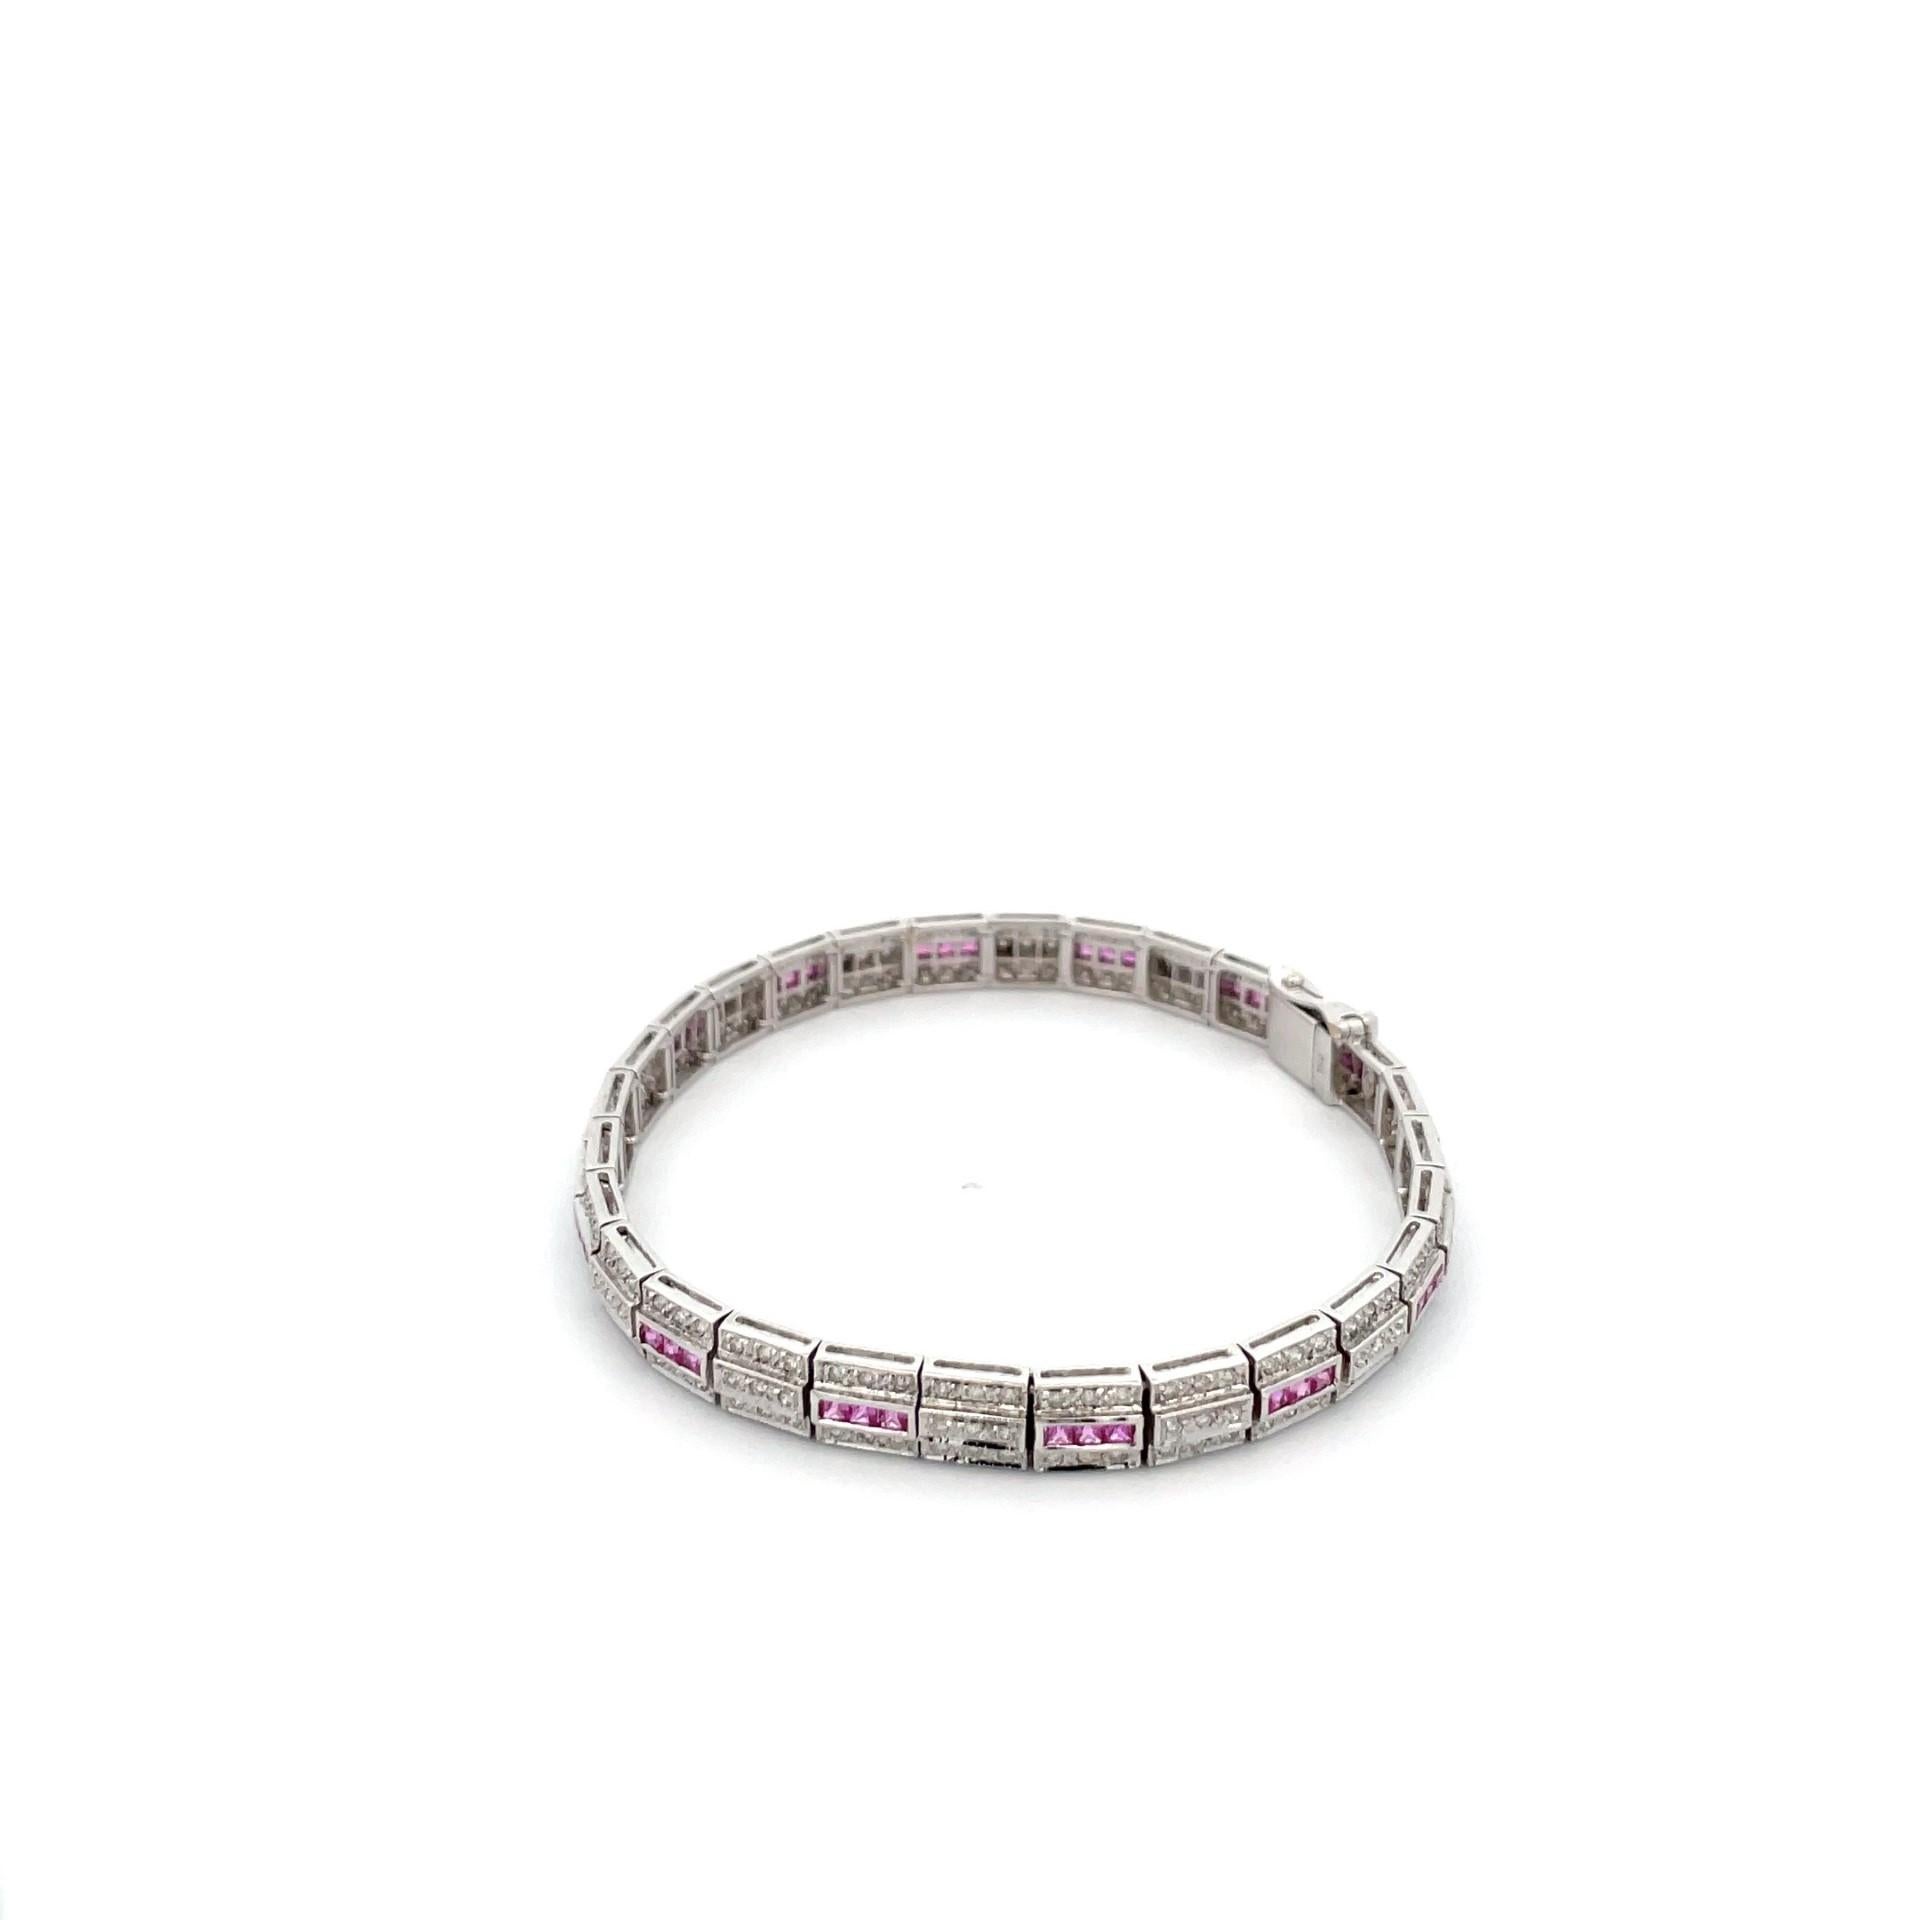 Ein Armband aus 18-karätigem Weißgold mit Kanalfassung im Prinzessinnenschliff  natürliche rosa Saphire und natürliche Diamanten im Brillantschliff. 

42 natürliche rosa Saphire mit einem Gesamtgewicht von 2,29ct

214 Diamanten im Brillantschliff,